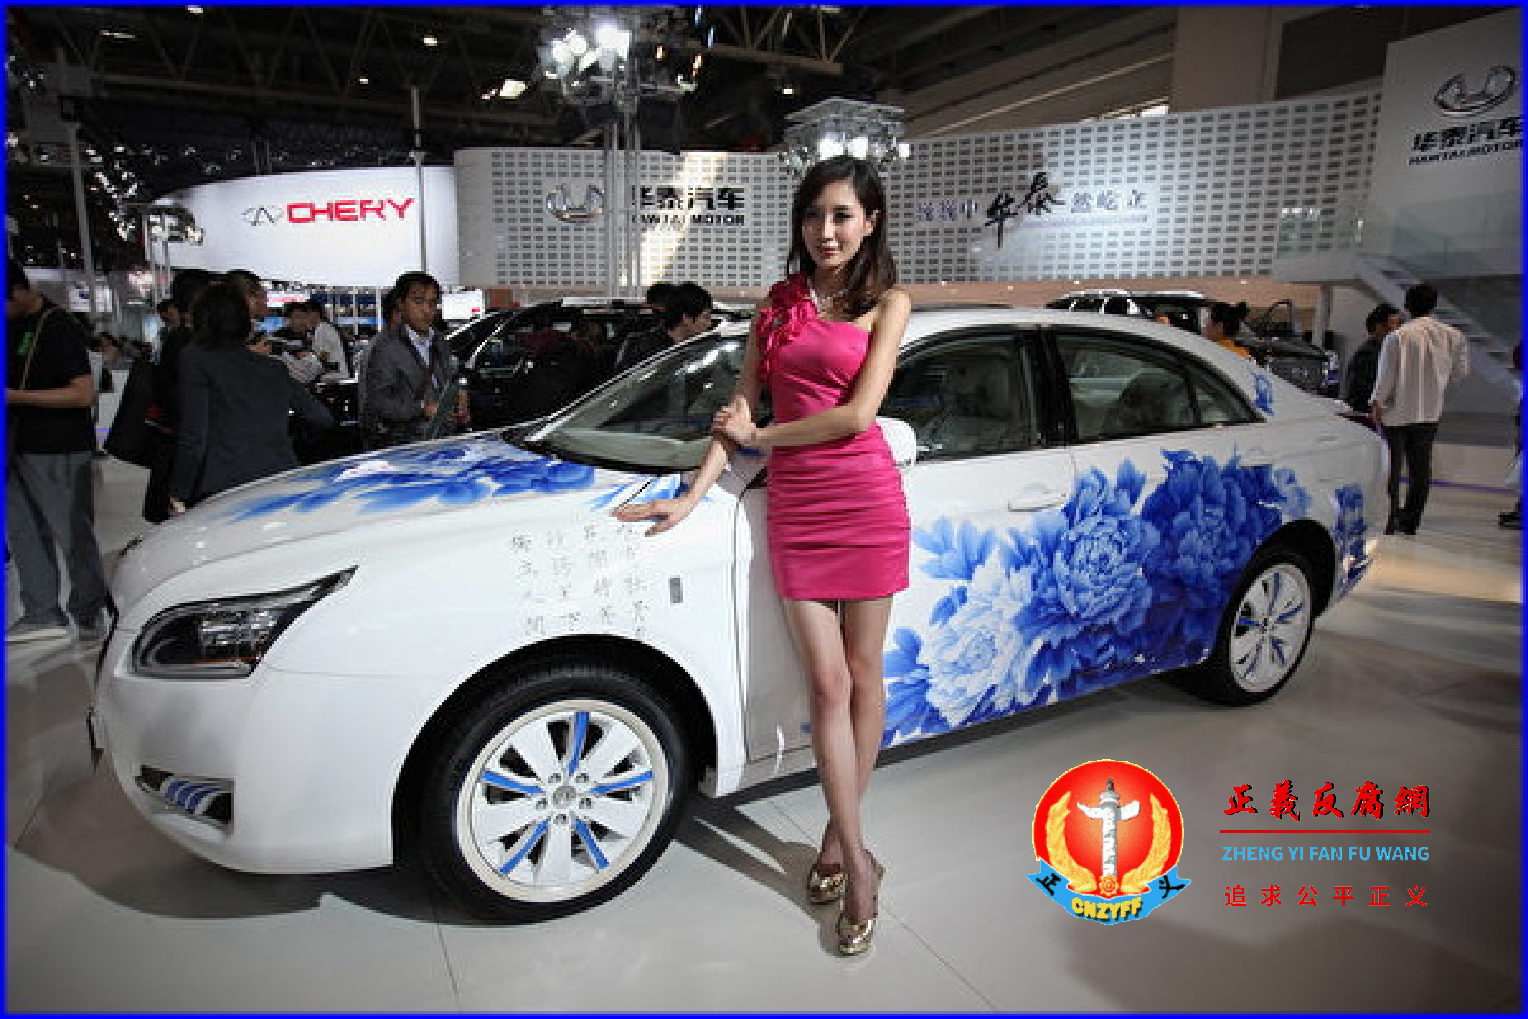 2012年4月25日，在北京国际展览中心举行的汽车展览会上，华泰汽车集团展出华泰B11。据媒体报道，该车虽勉强上市，但整车质量问题仍很多。.png